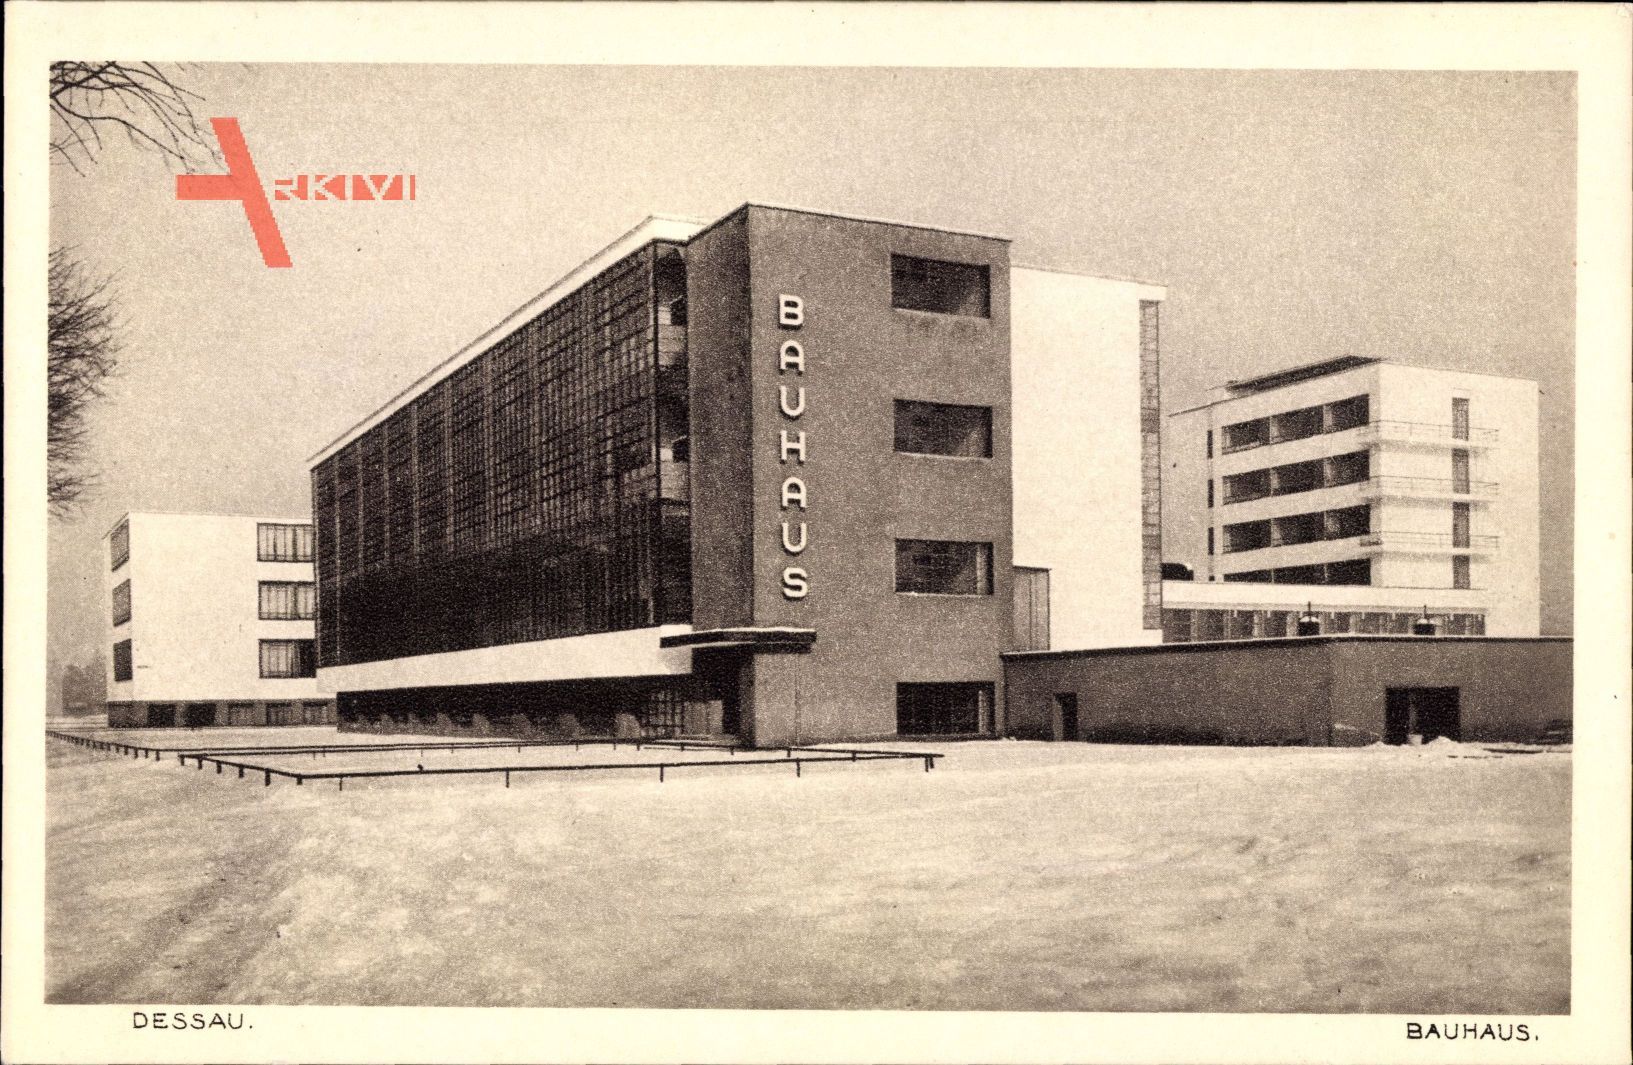 Dessau in Sachsen Anhalt, Bauhaus, Winter, Schnee